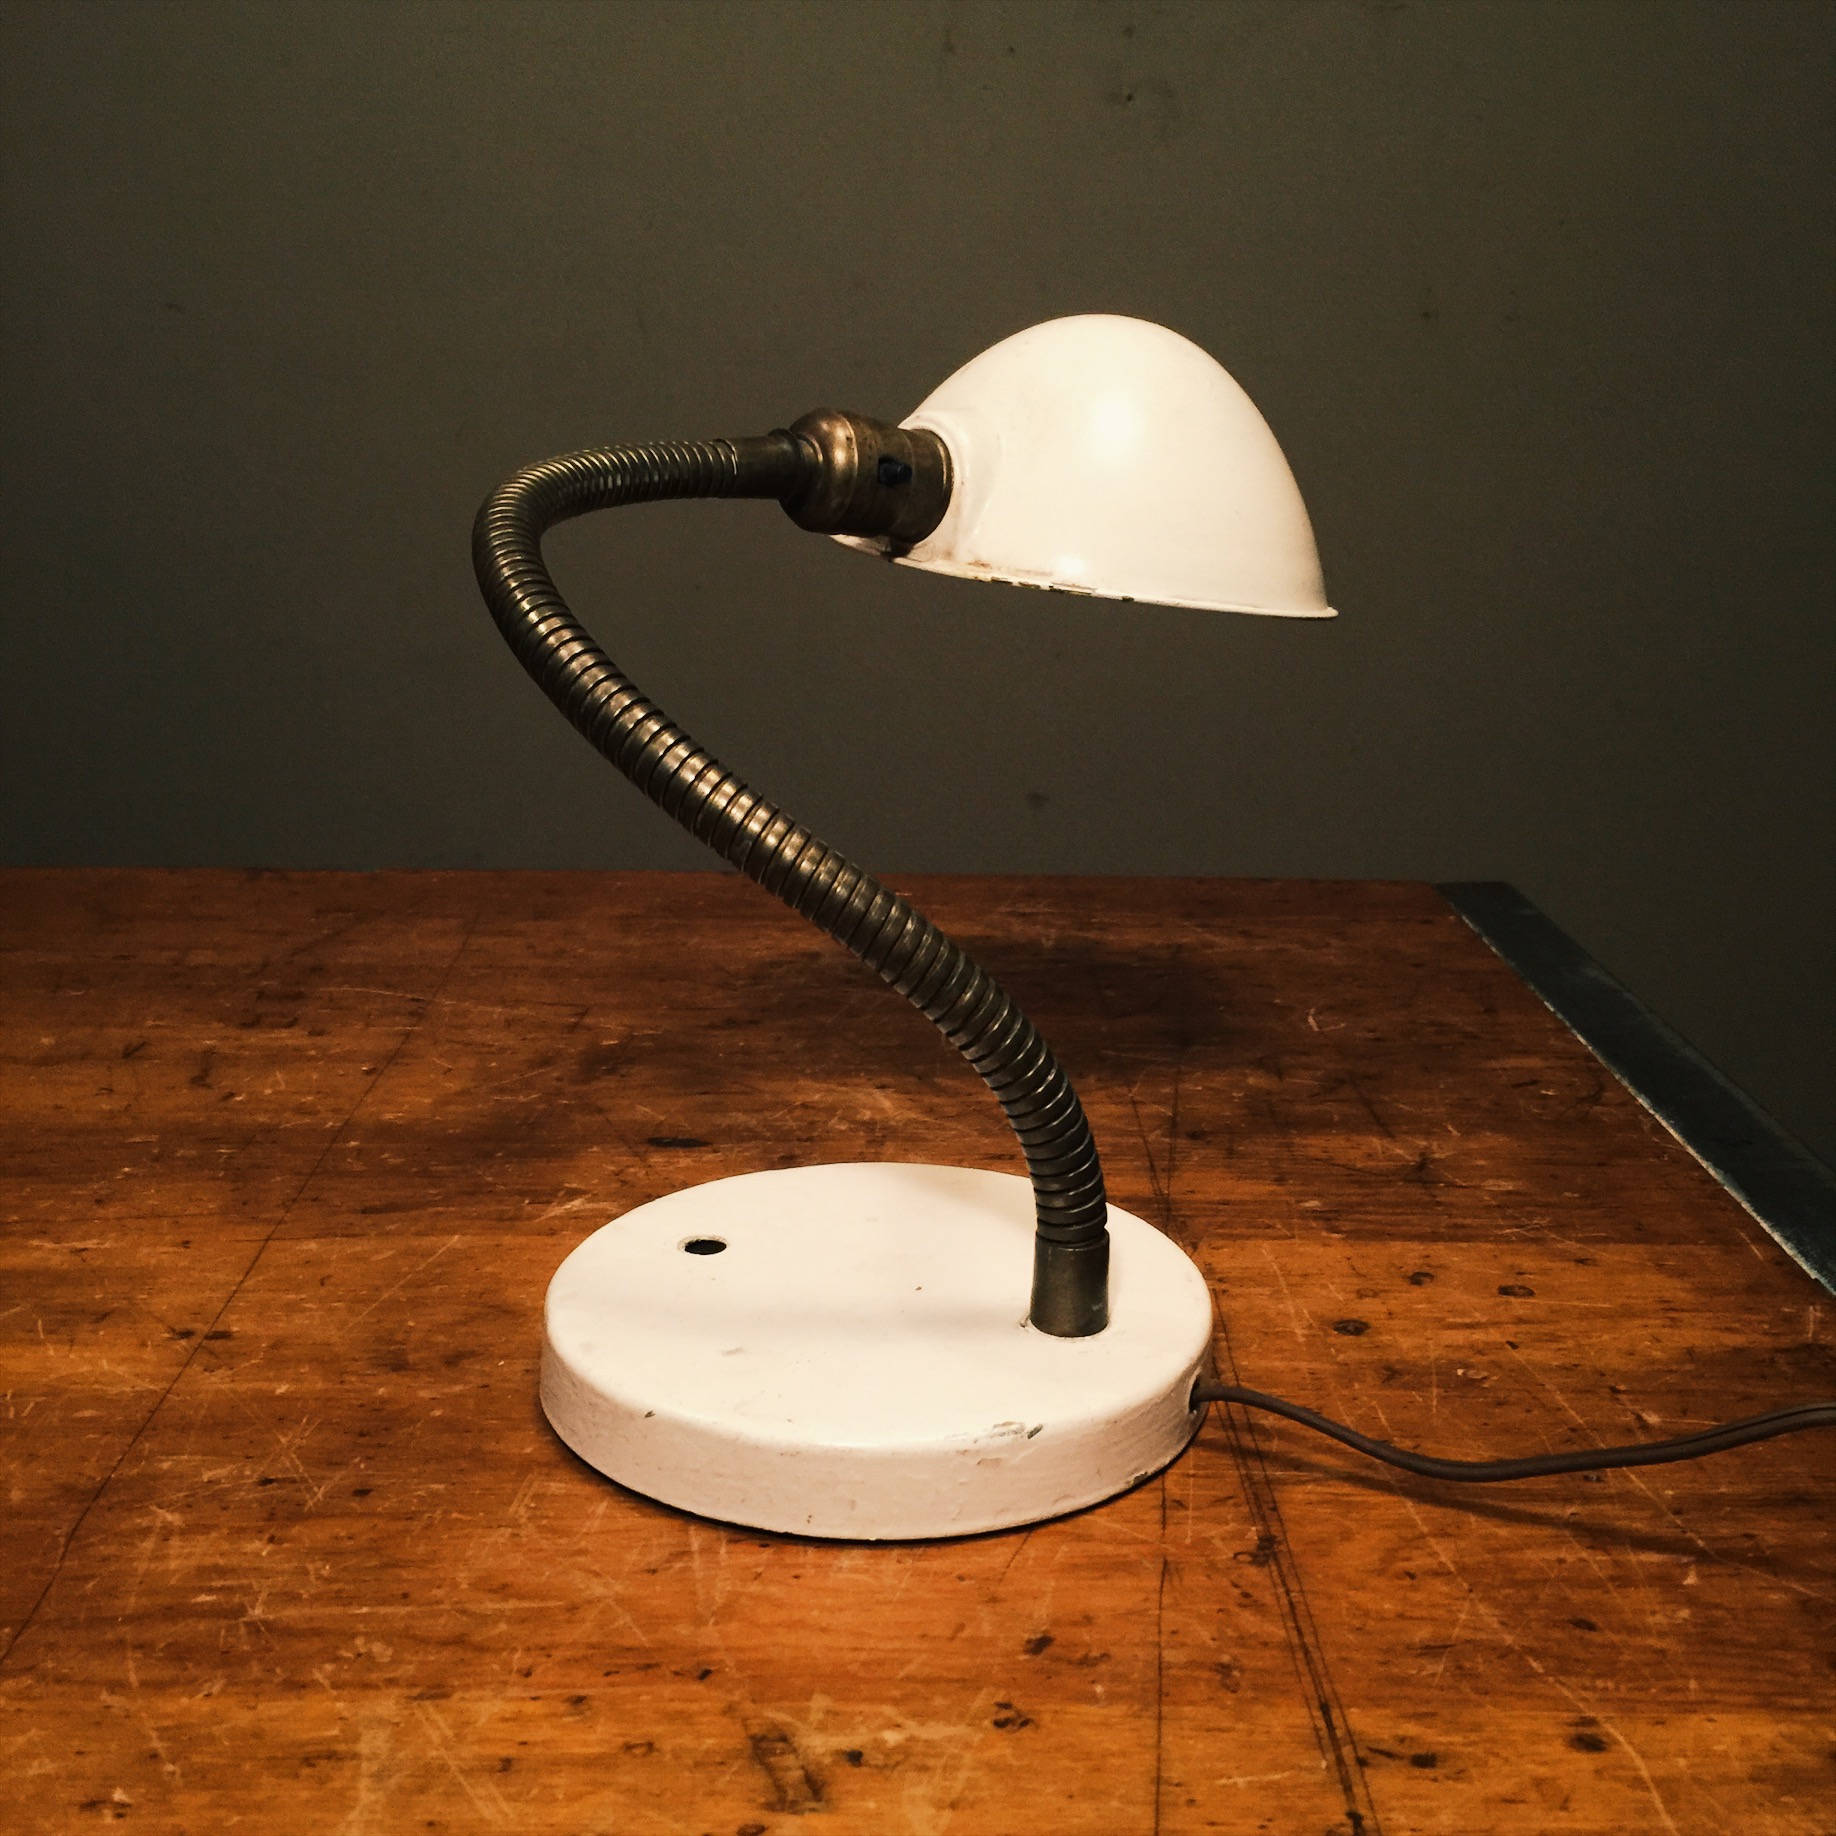 Vintage Industrial Gooseneck Desk Lamp - 1940s - White Accent Shade - Original Vintage Lighting - Industrial Lighting - Industrial Decor